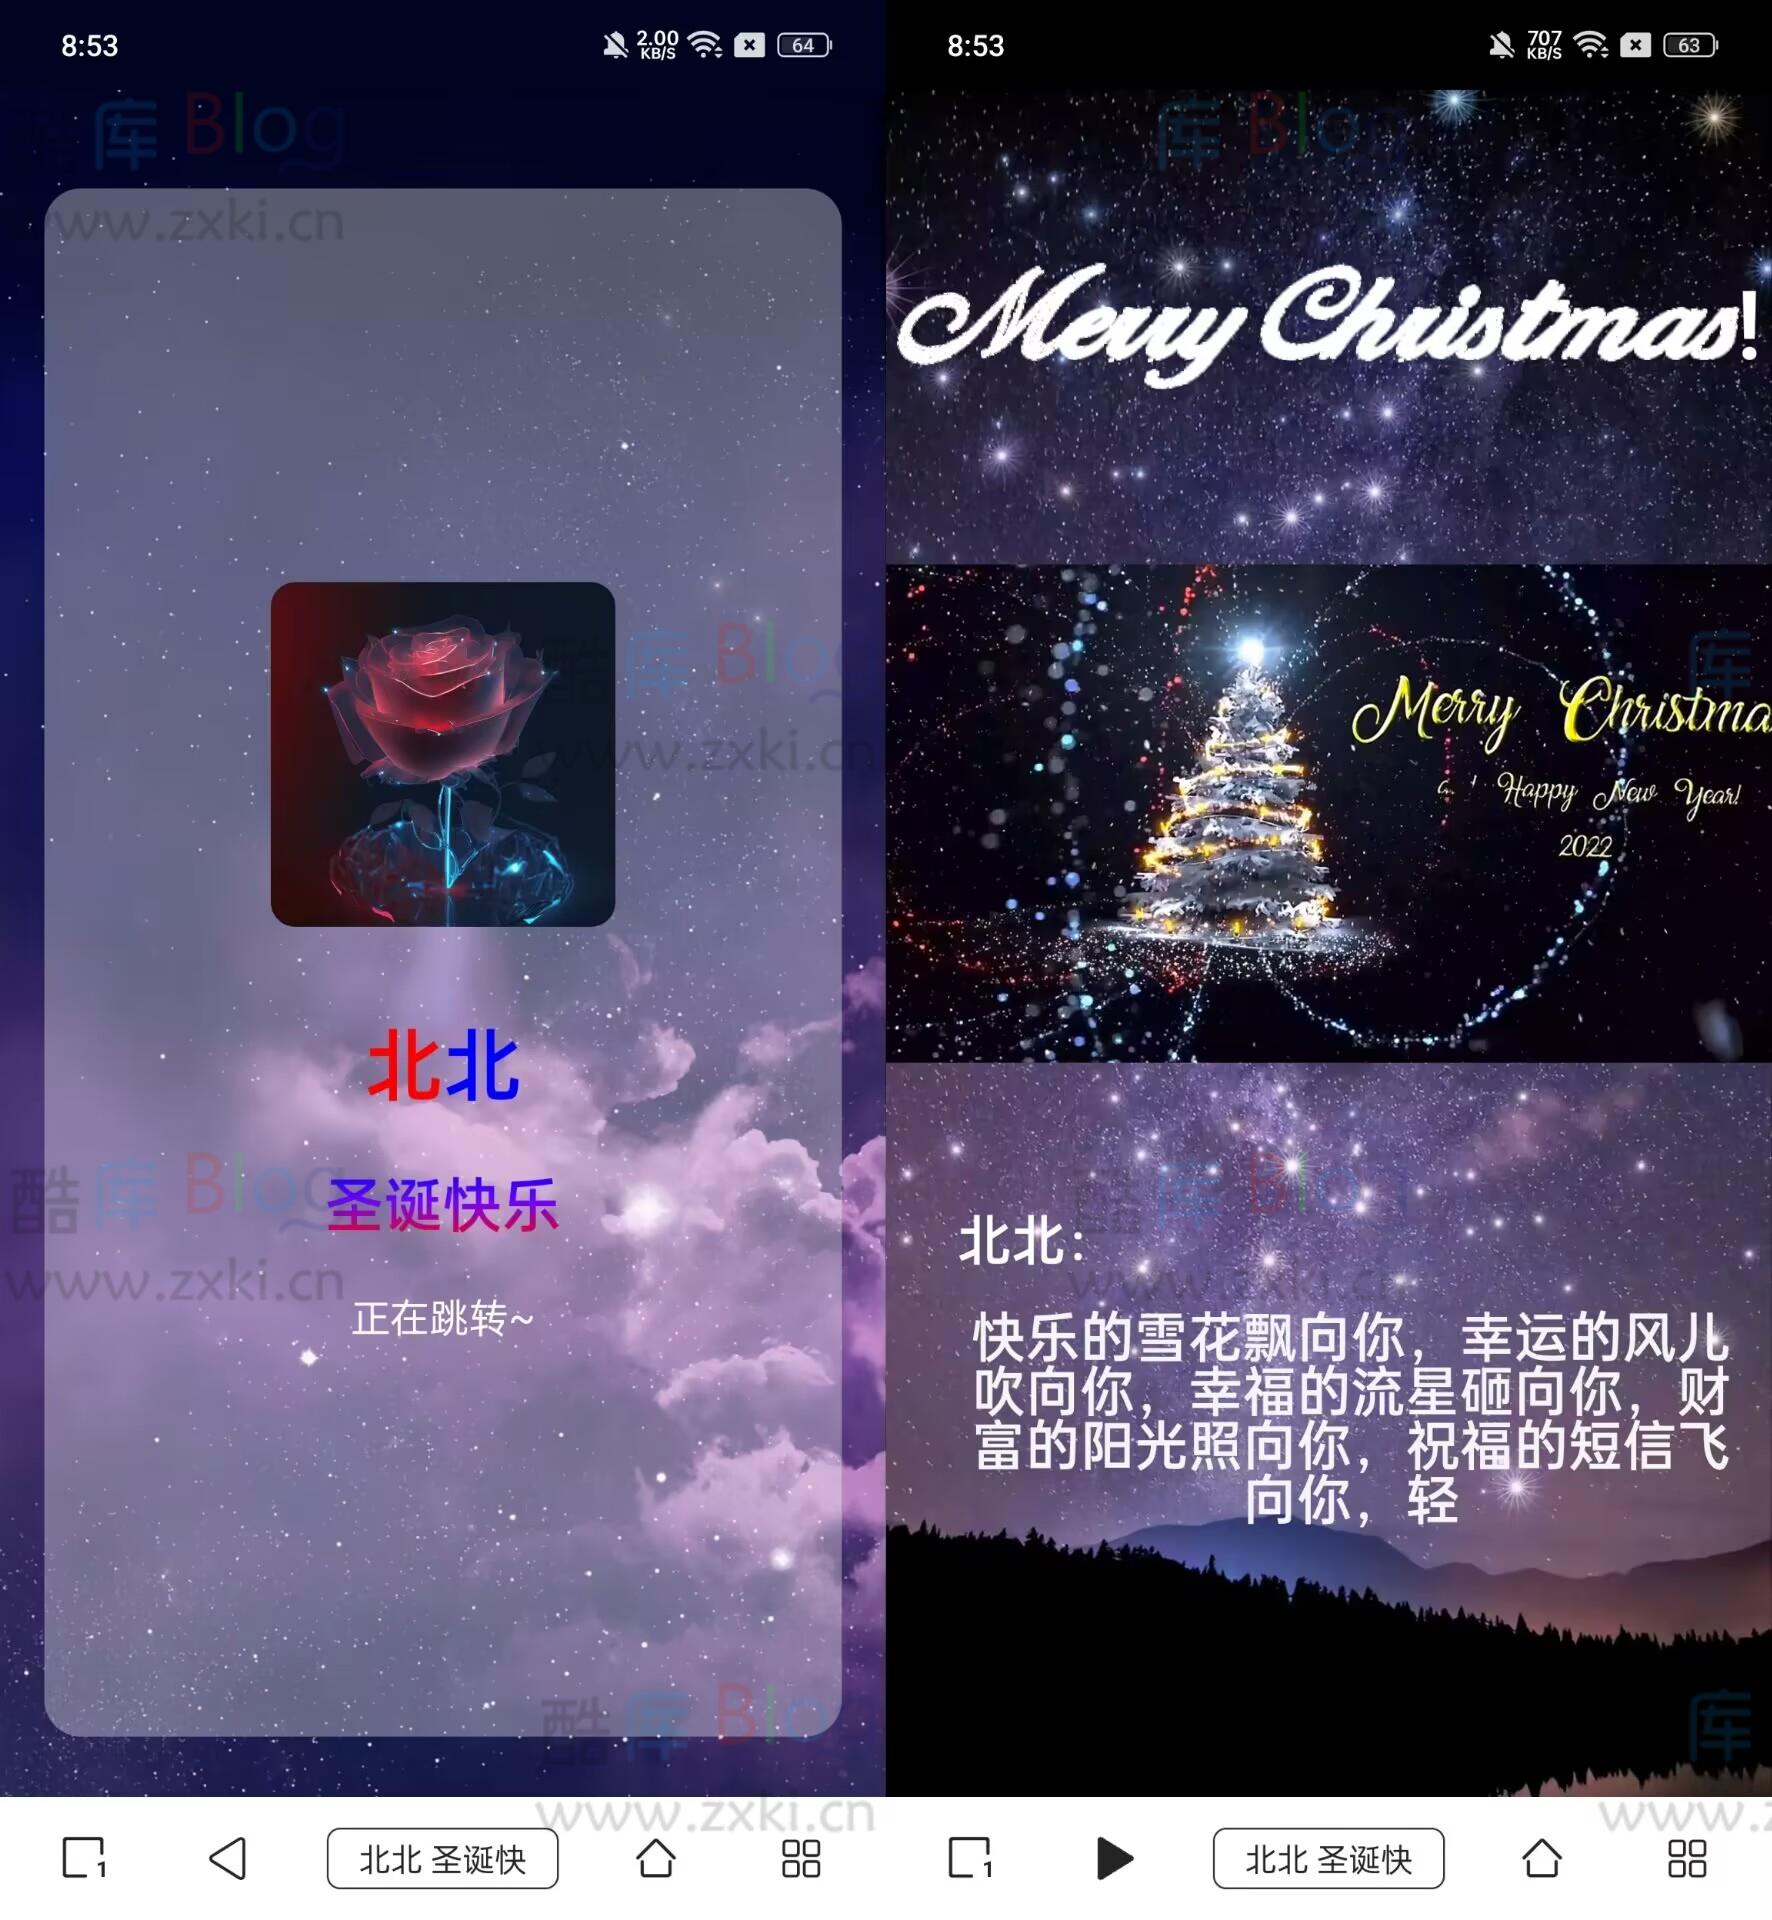 圣诞祝福网站html源码 第2张插图